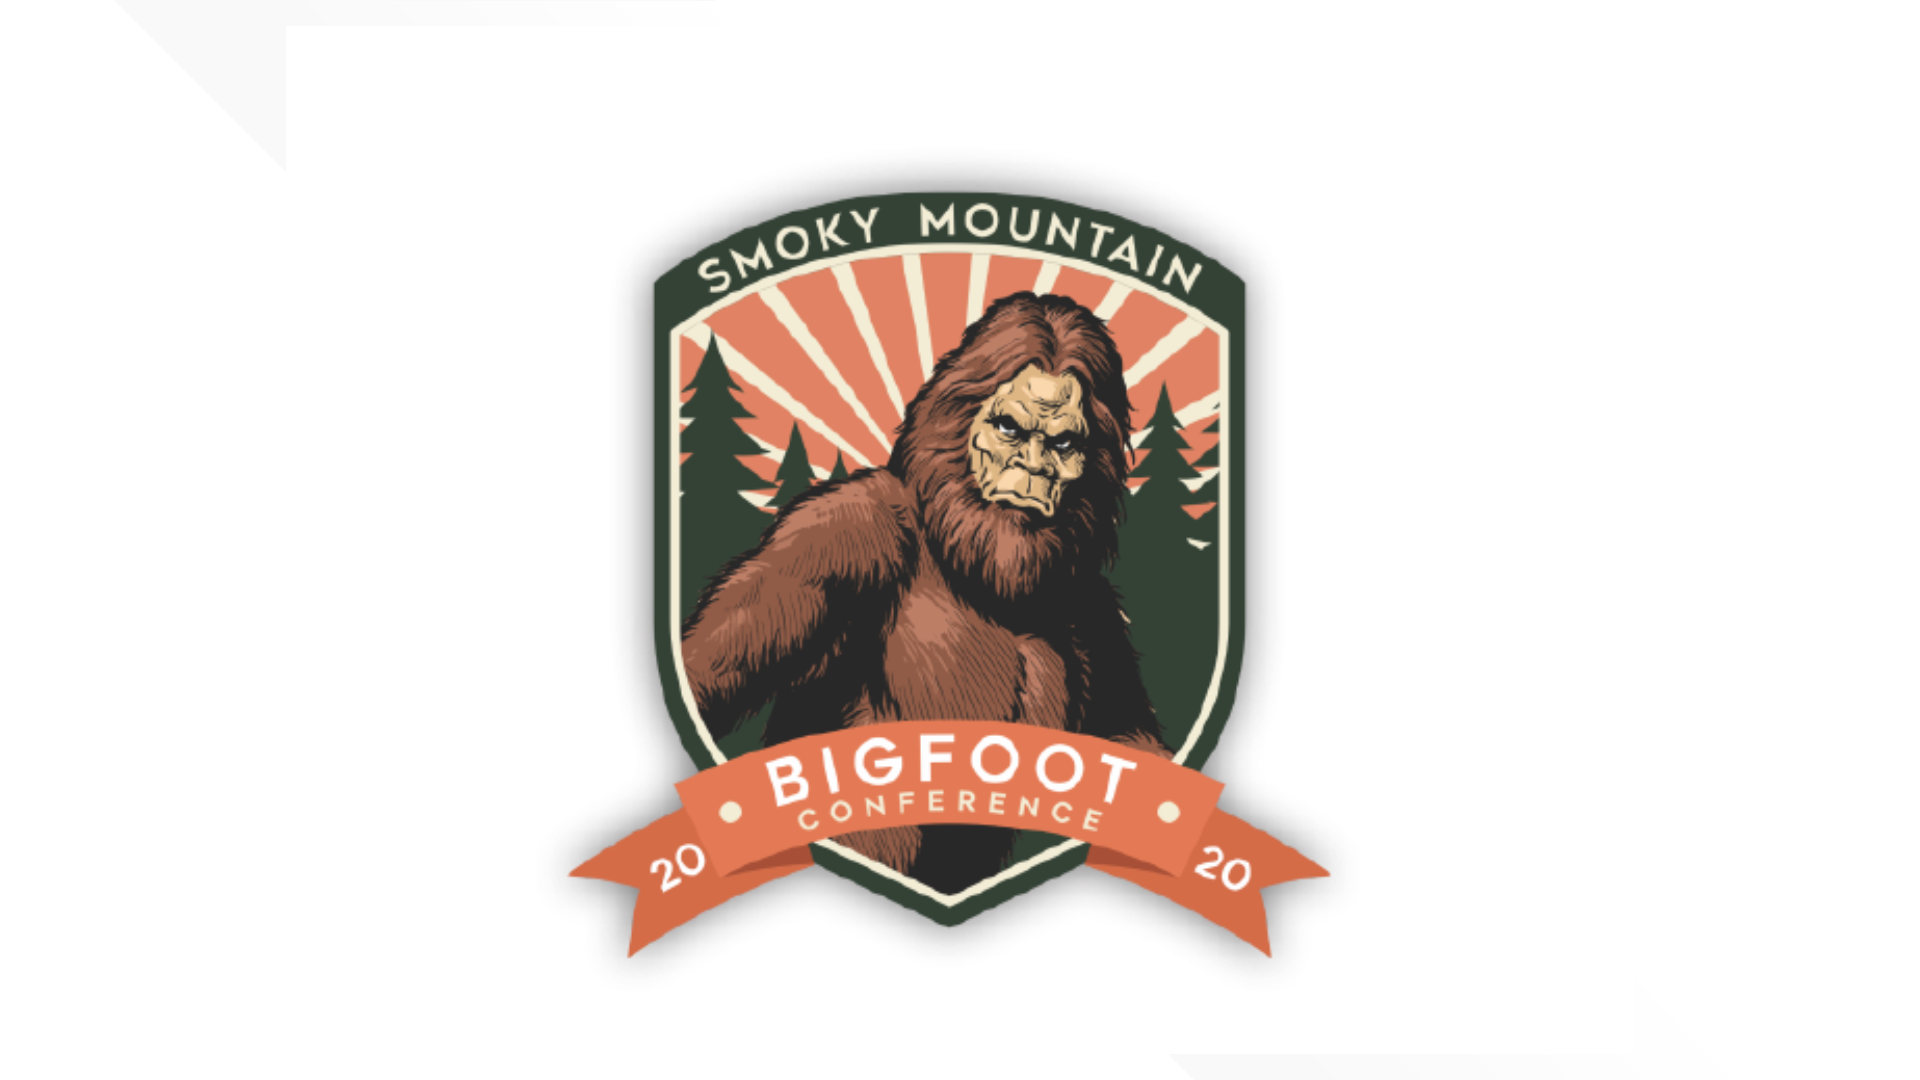 Gatlinburg Bigfoot conference starts in July